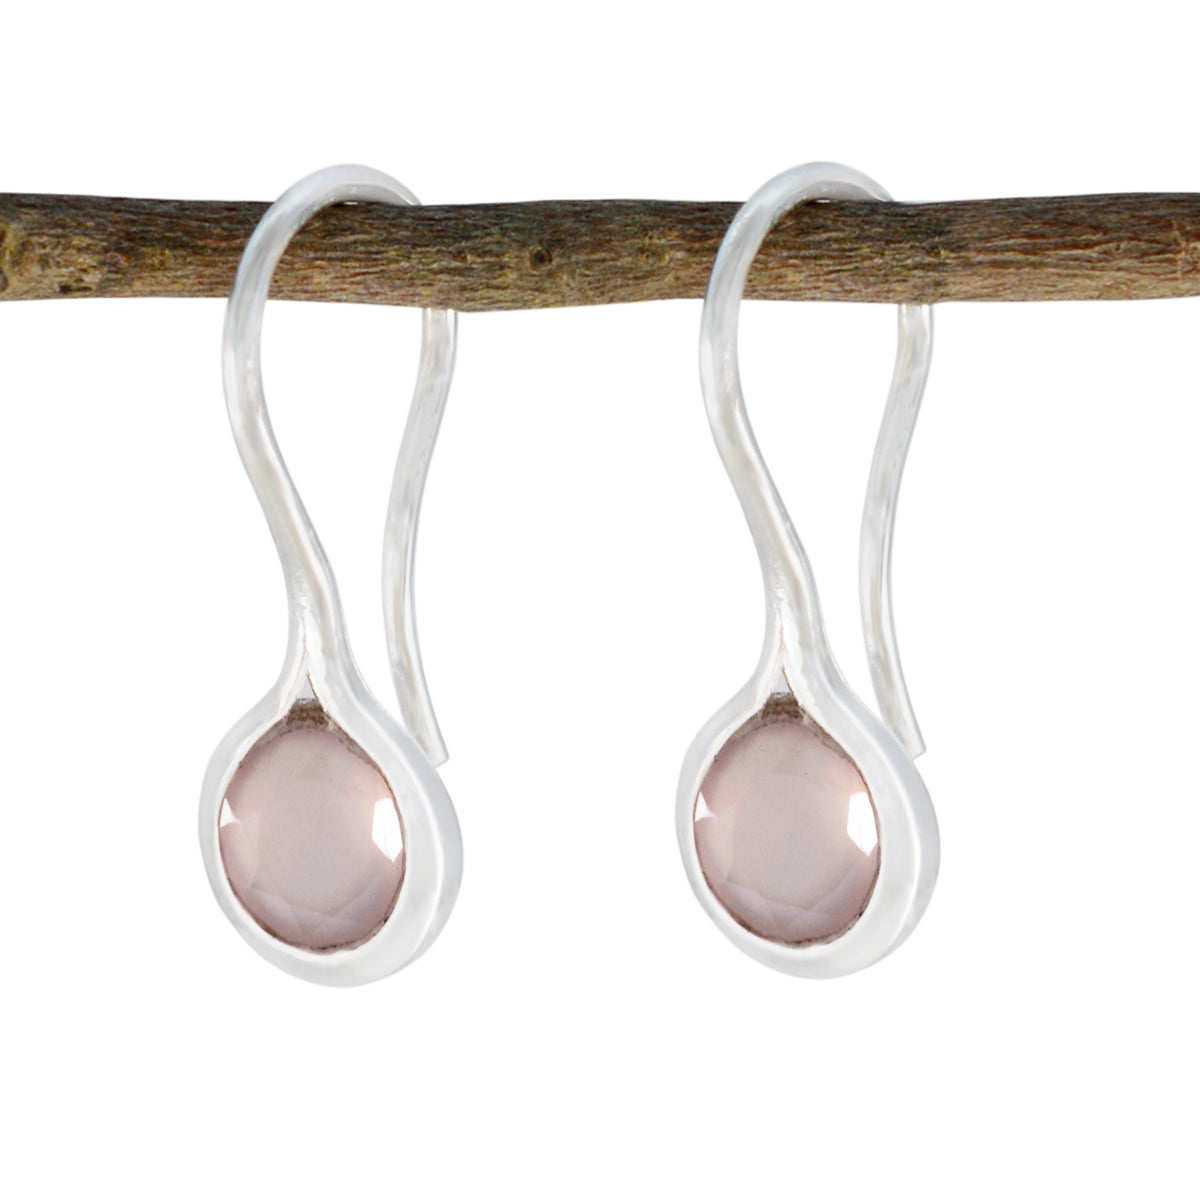 Riyo belle boucle d'oreille en argent sterling 925 pour femme boucle d'oreille en quartz rose réglage de la boucle d'oreille rose boucle d'oreille pendante